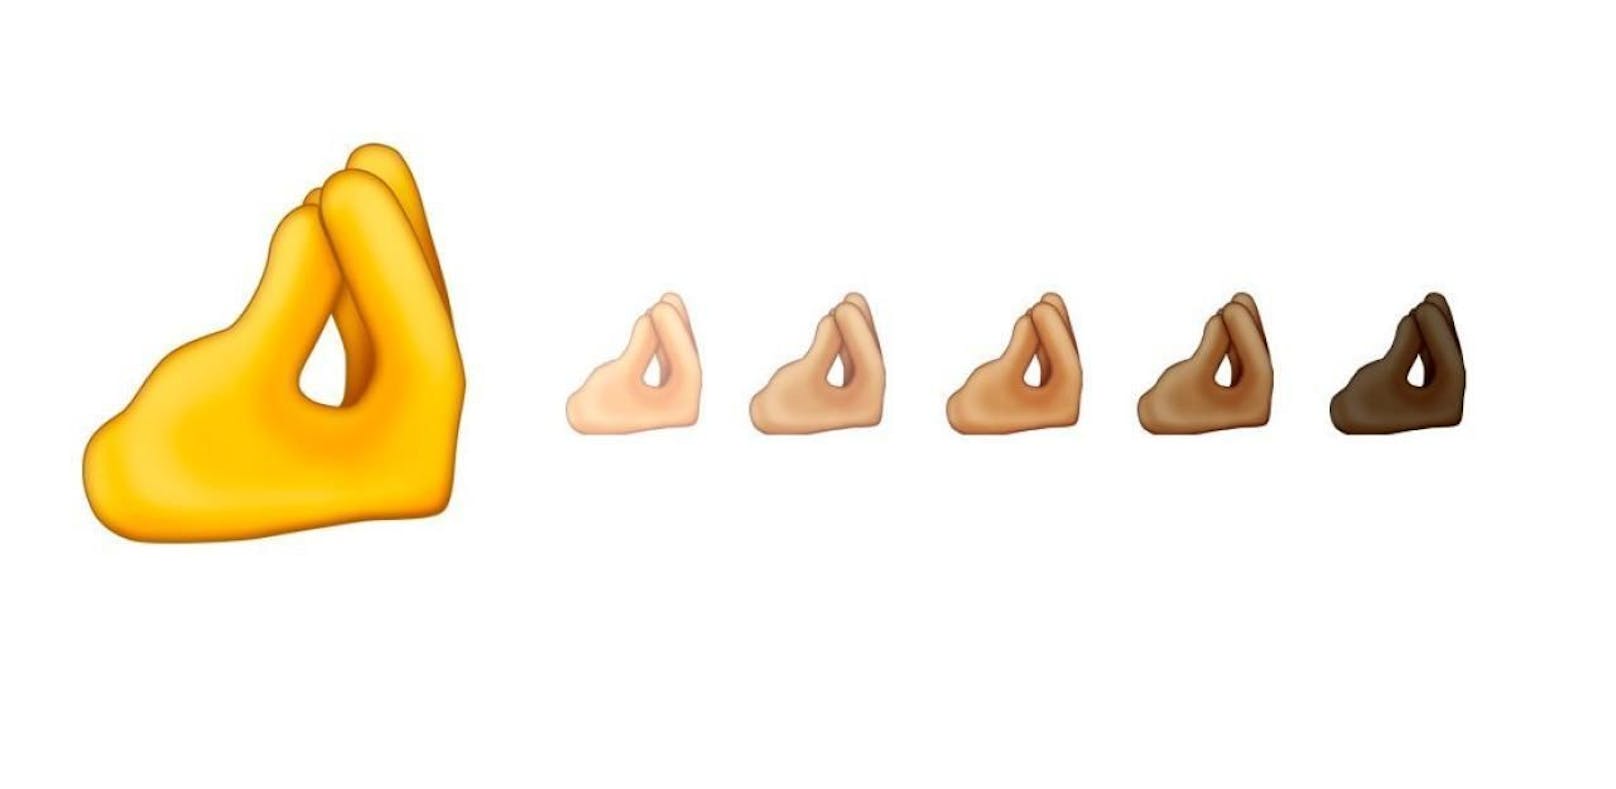 Dieses Emoji hat im Netz schon sexuelle Bedeutung